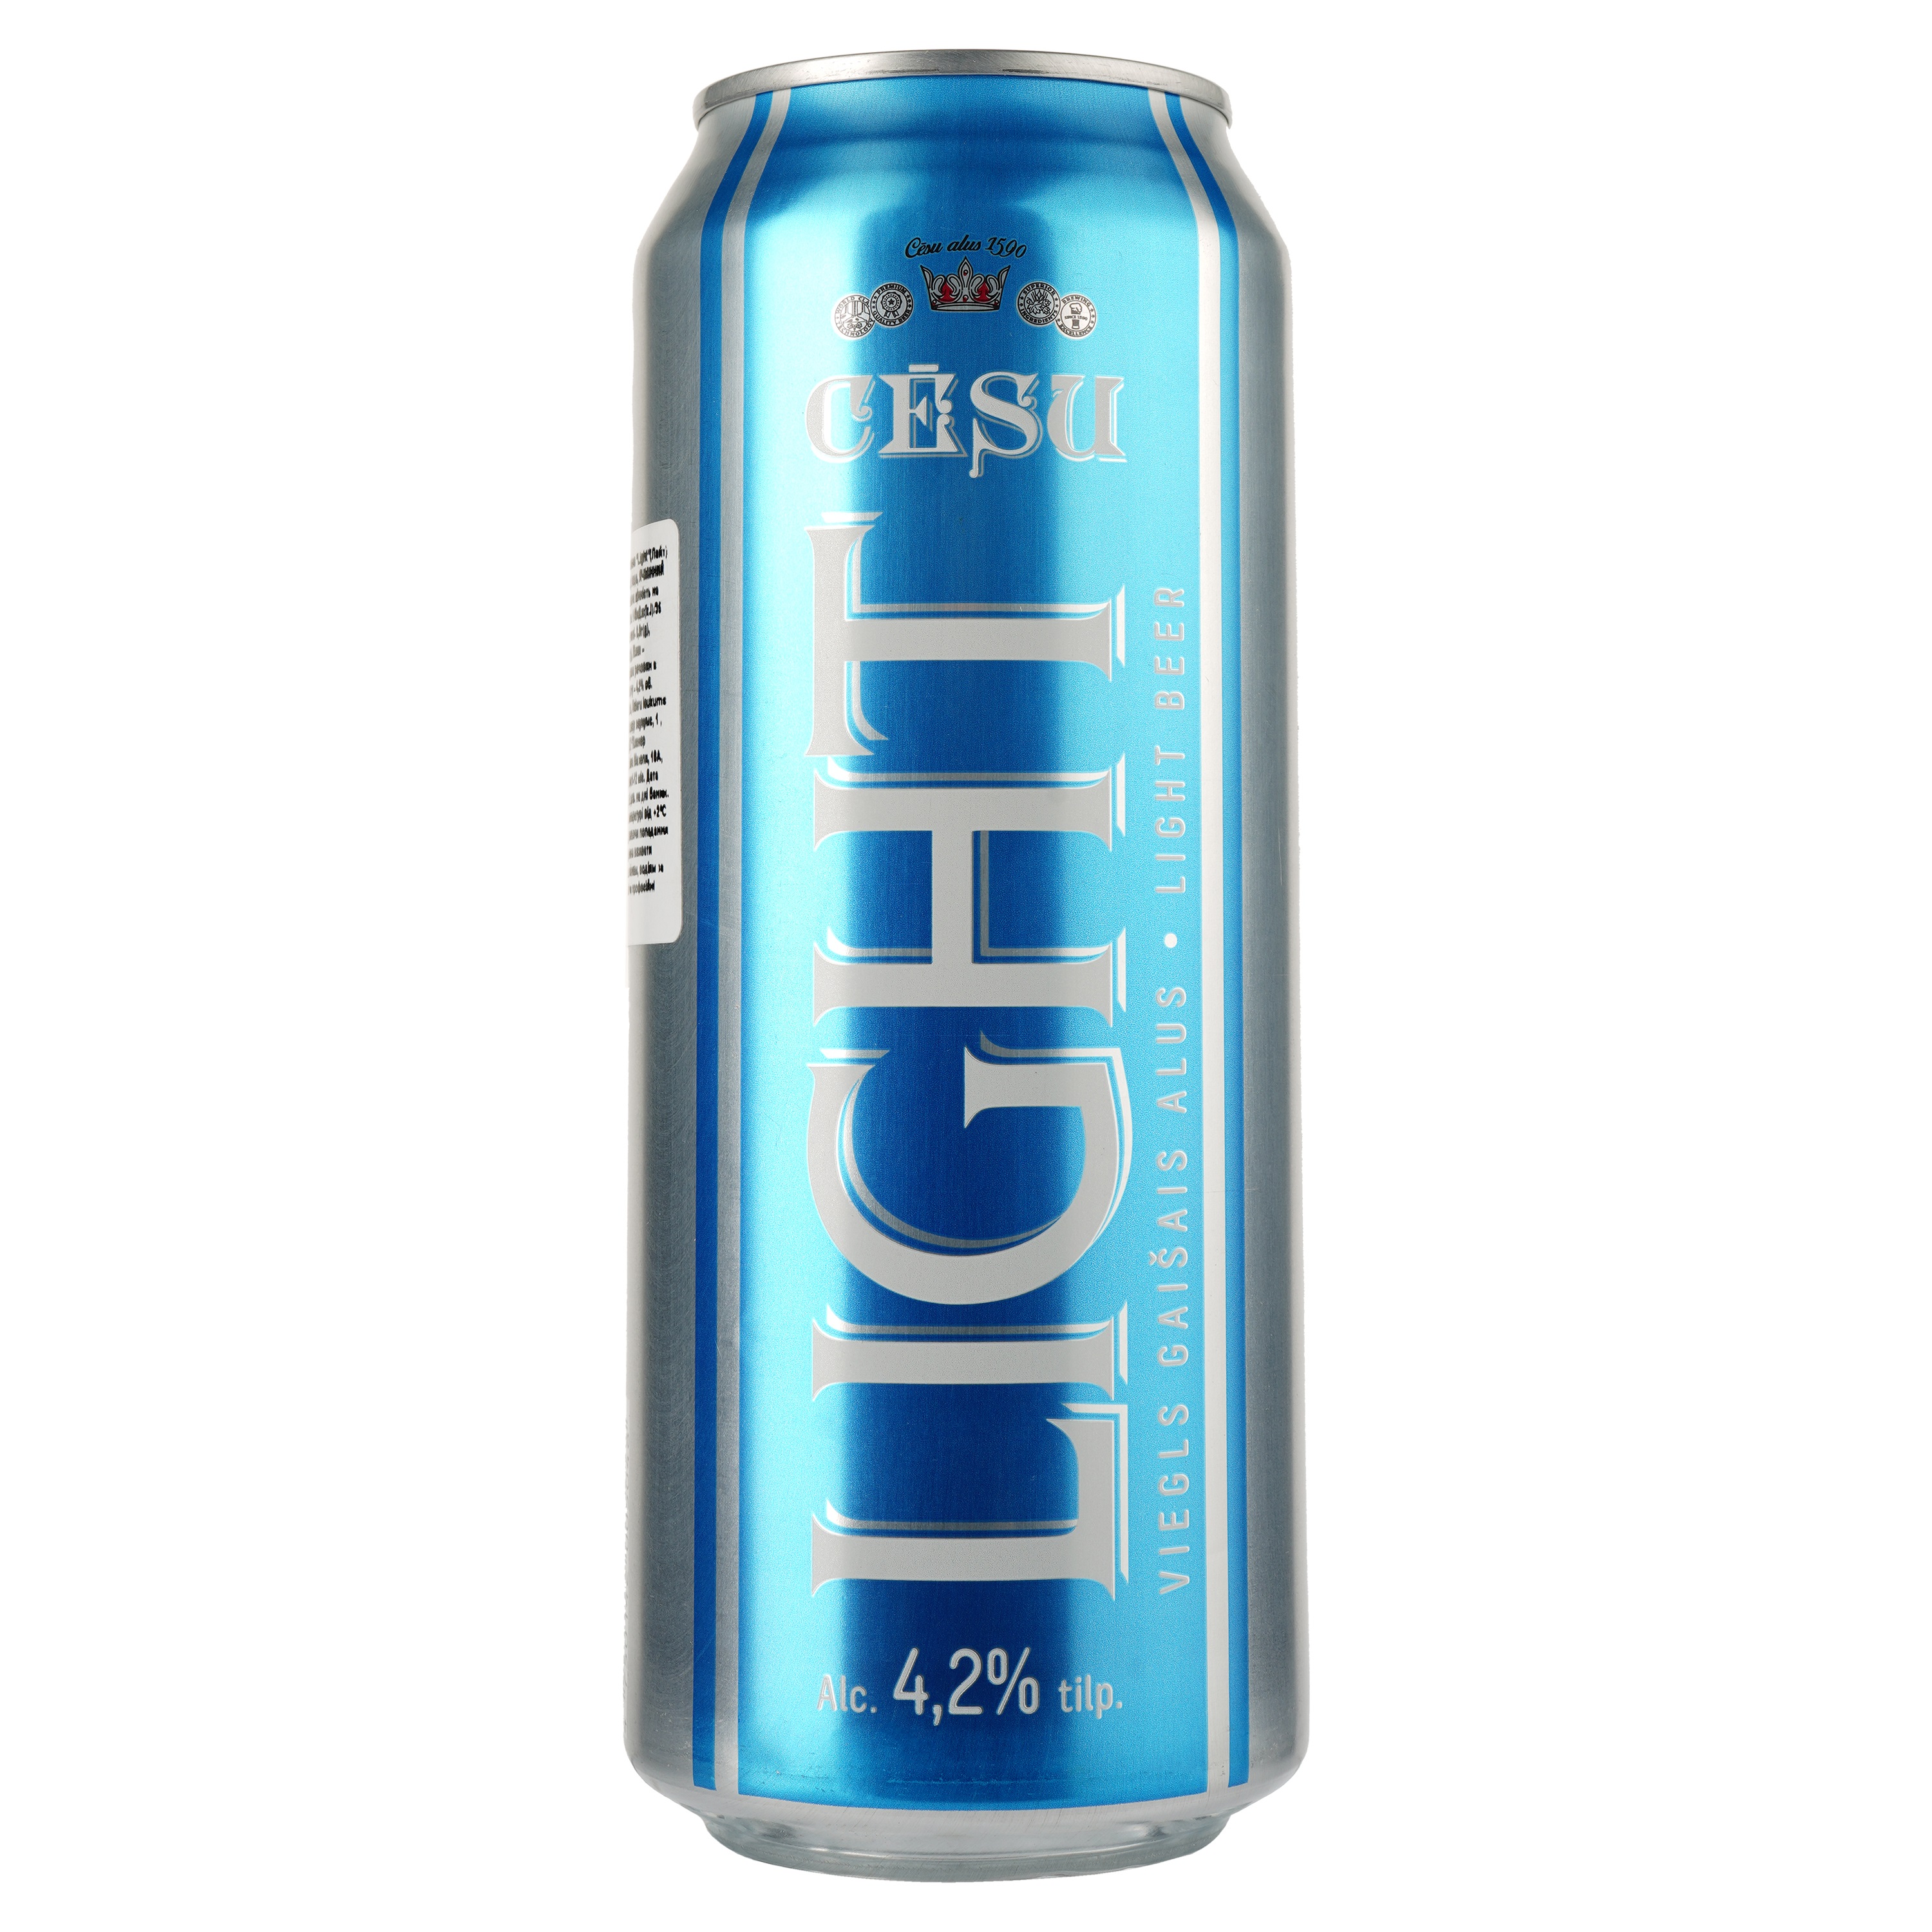 Пиво Cesu Light, світле, фільтроване, 4,2%, з/б, 0,5 л - фото 1